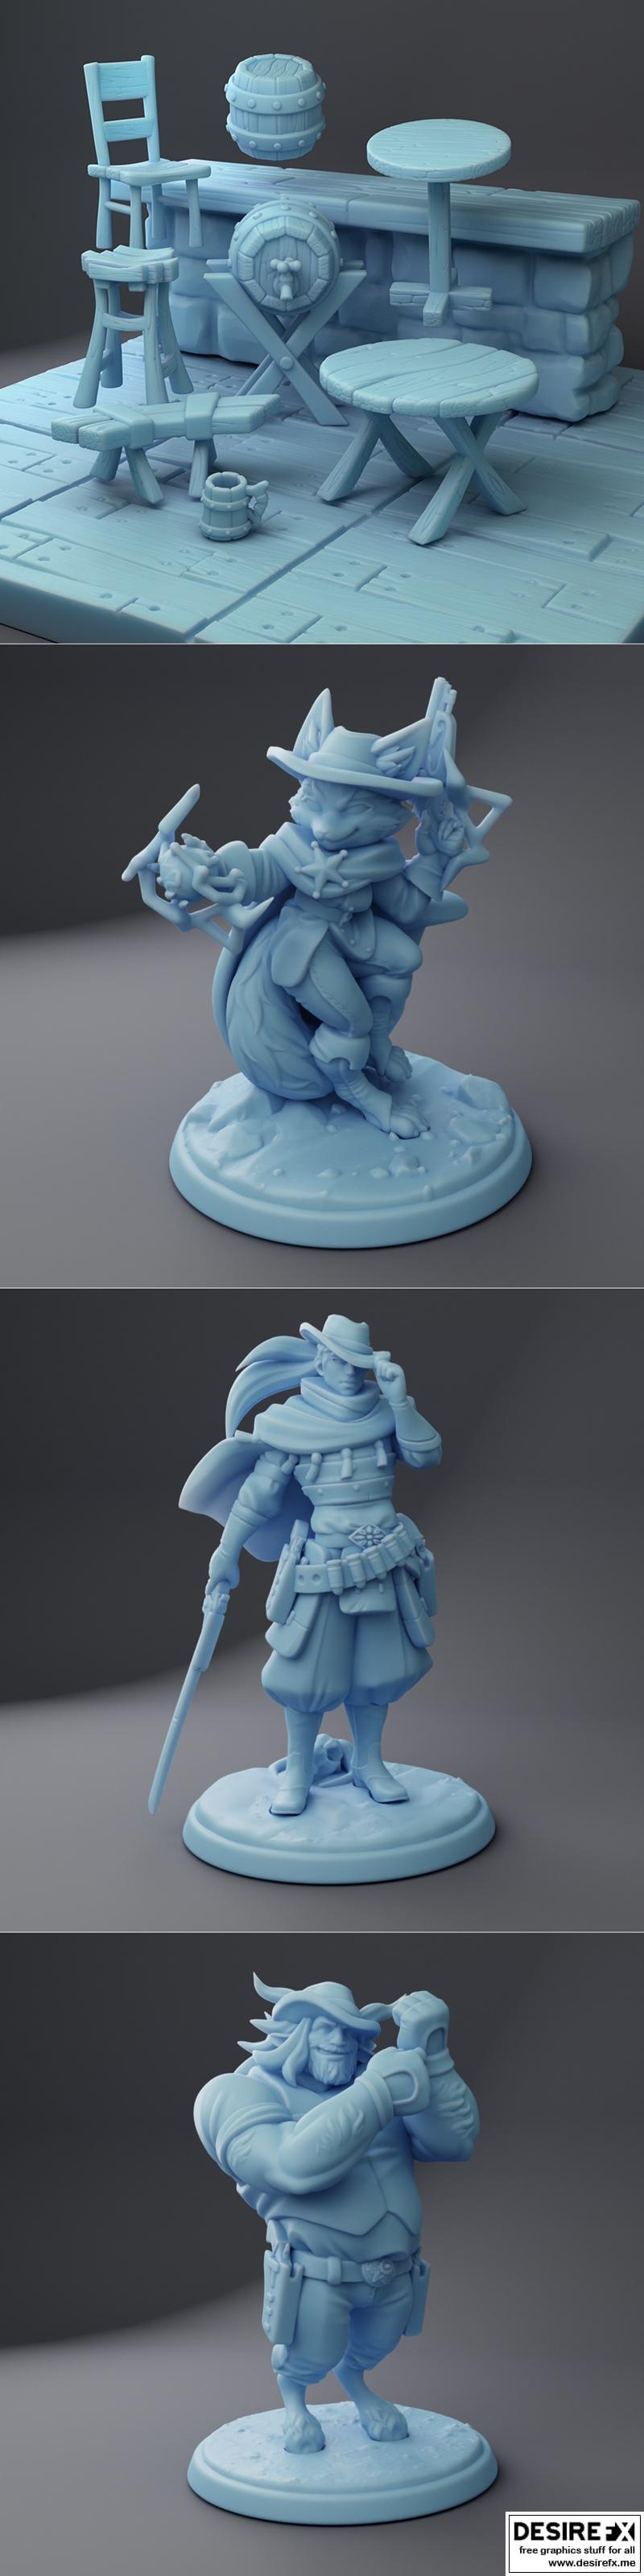 Desire FX 3d models | Twin Goddess Miniatures June 2023 – 3D Print ...